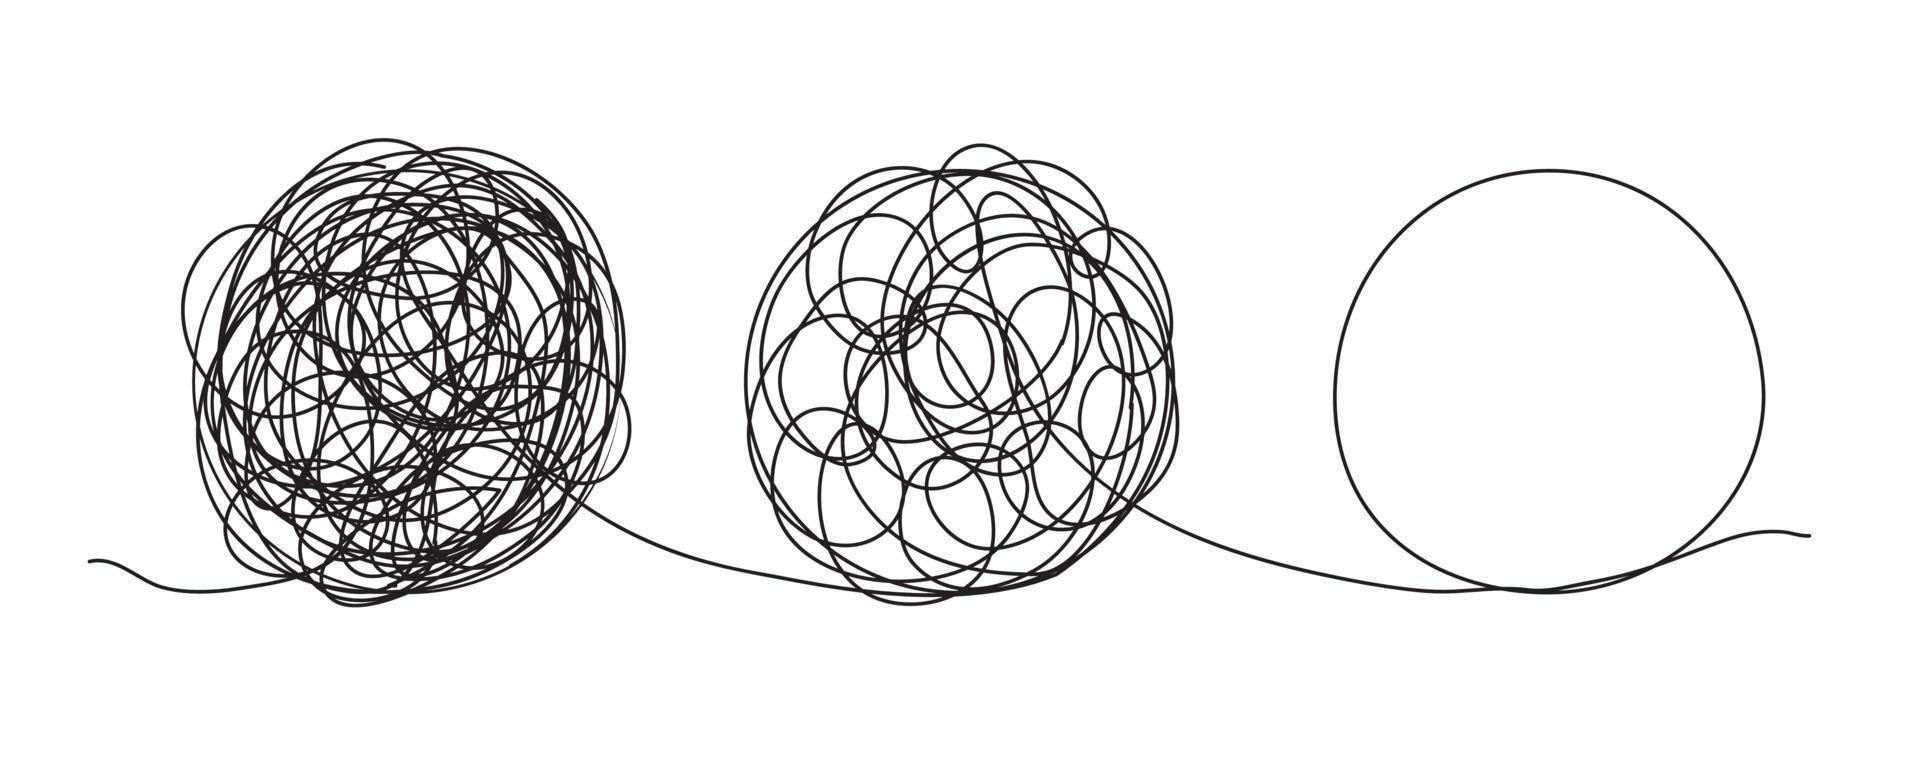 garabatos de líneas de garabatos. el concepto de transición de complicado a simple, aislado en fondo blanco. ilustraciones vectoriales vector